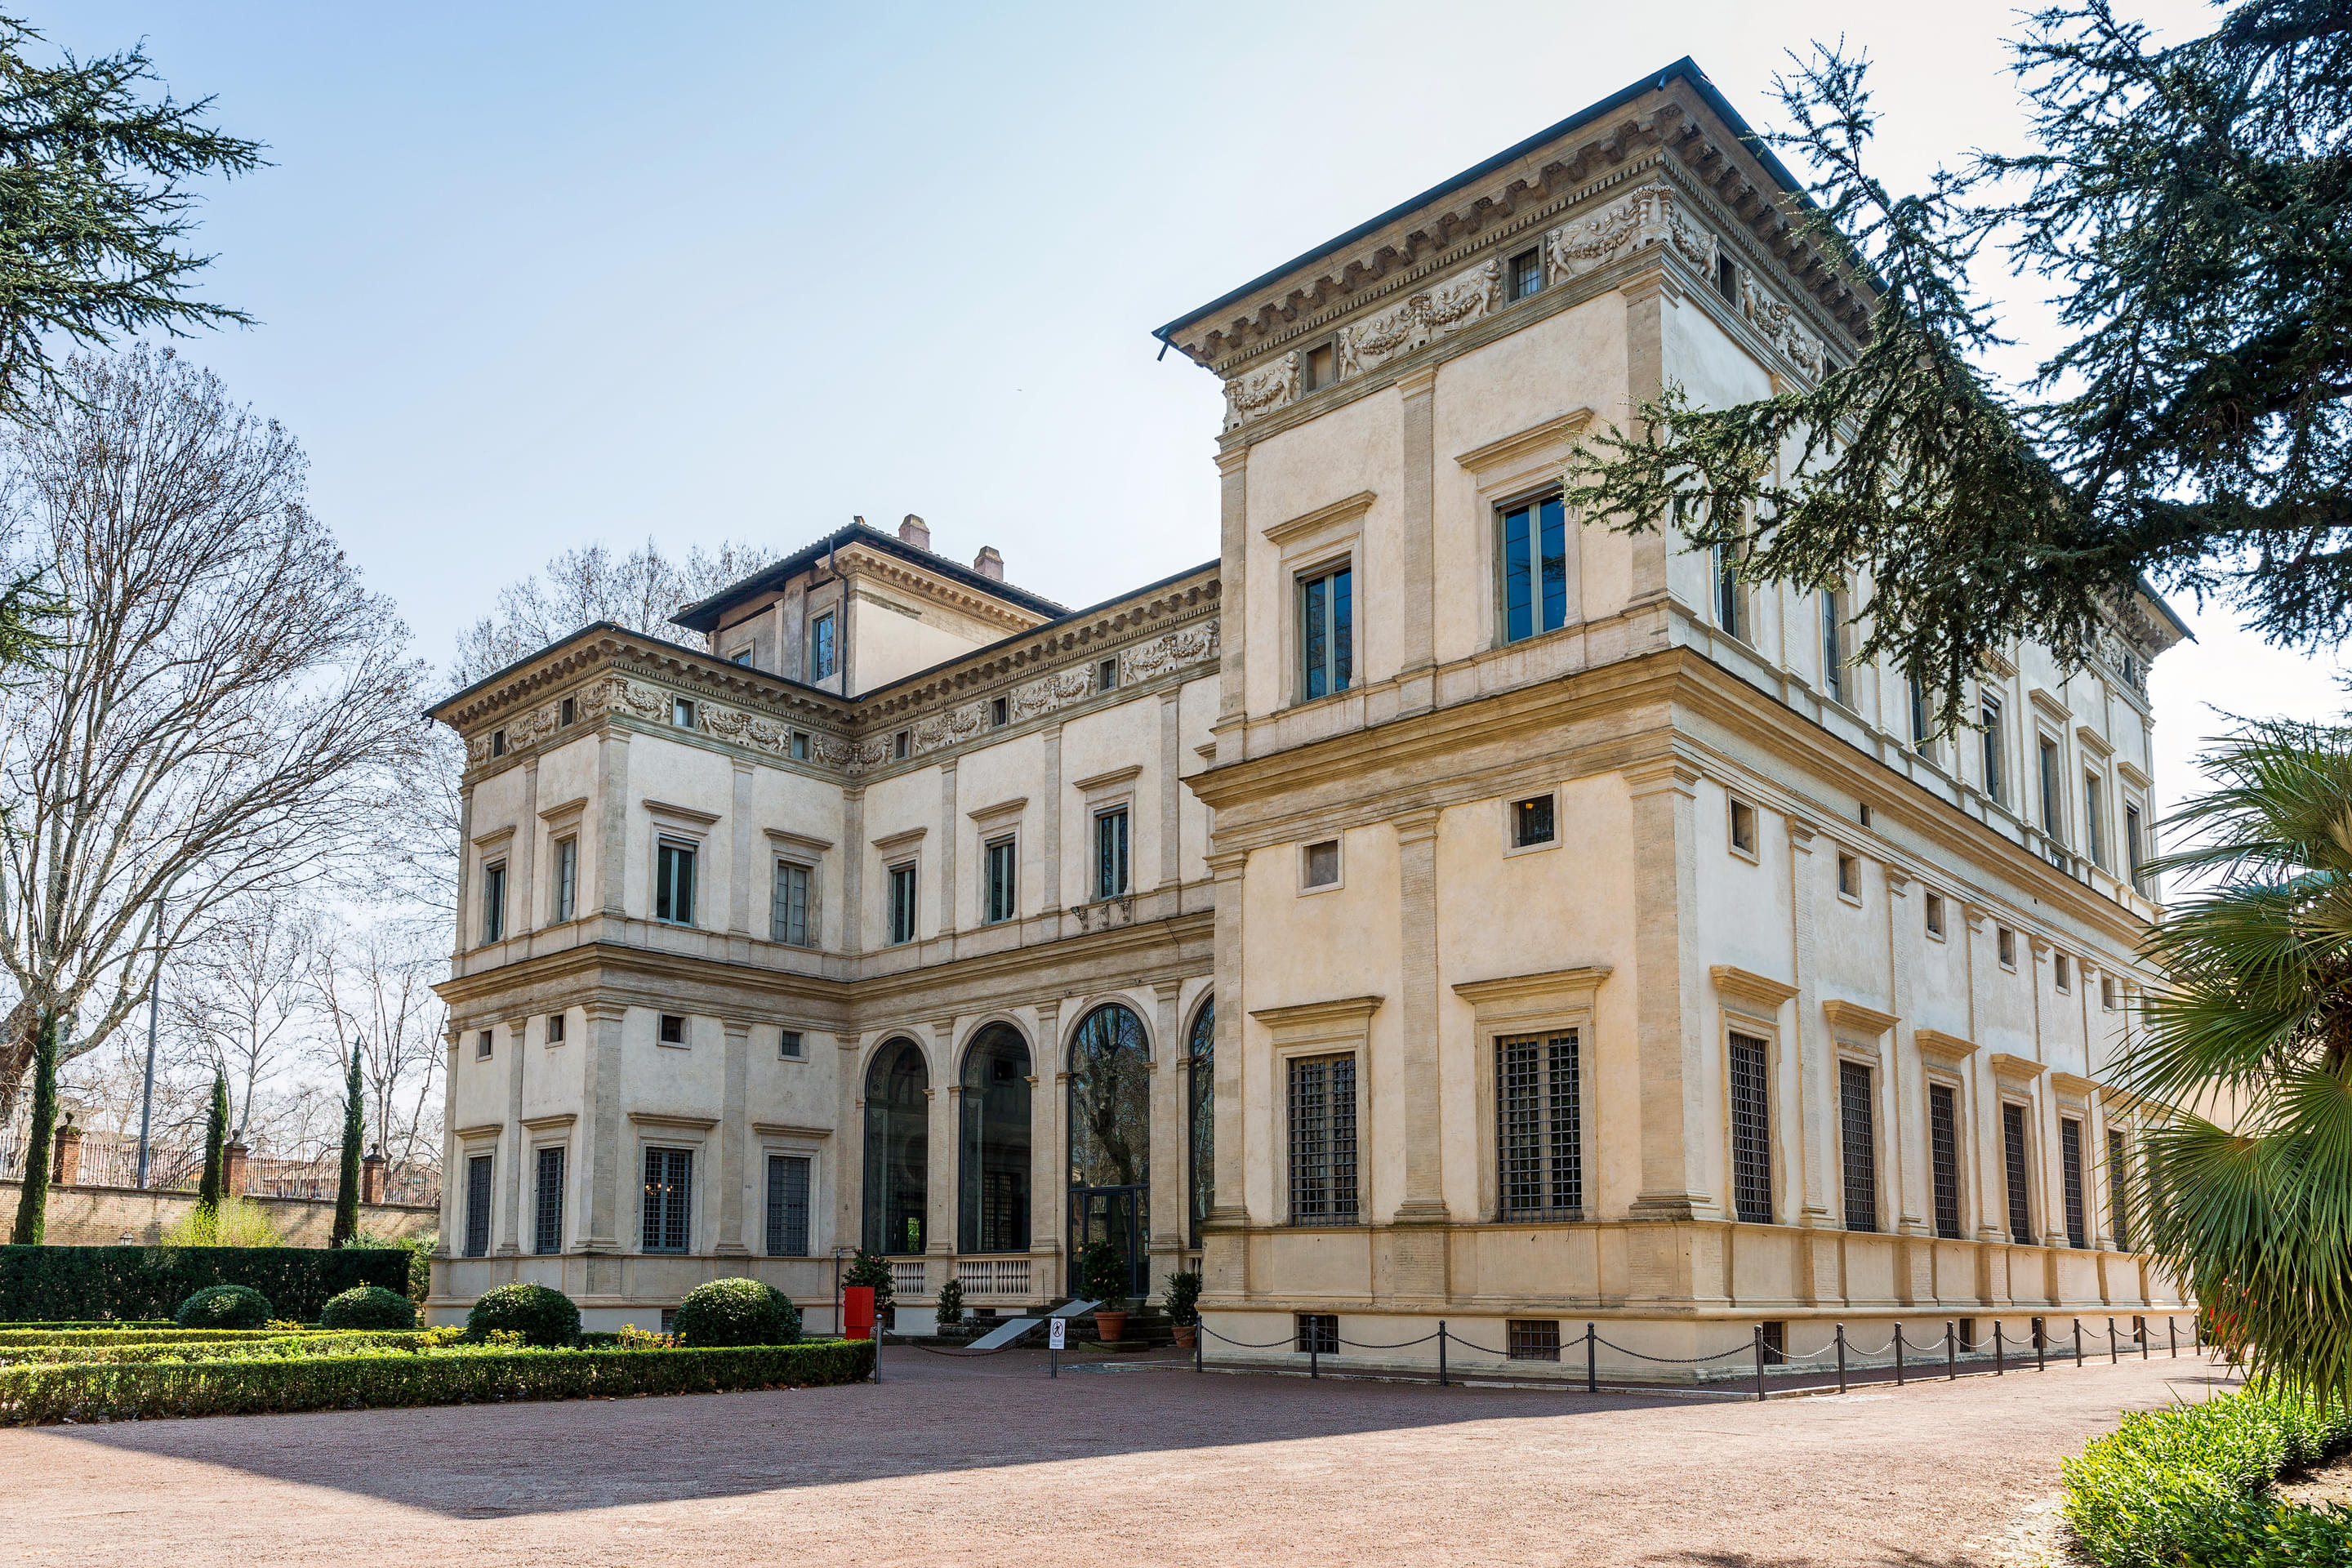 Villa Farnesina Overview